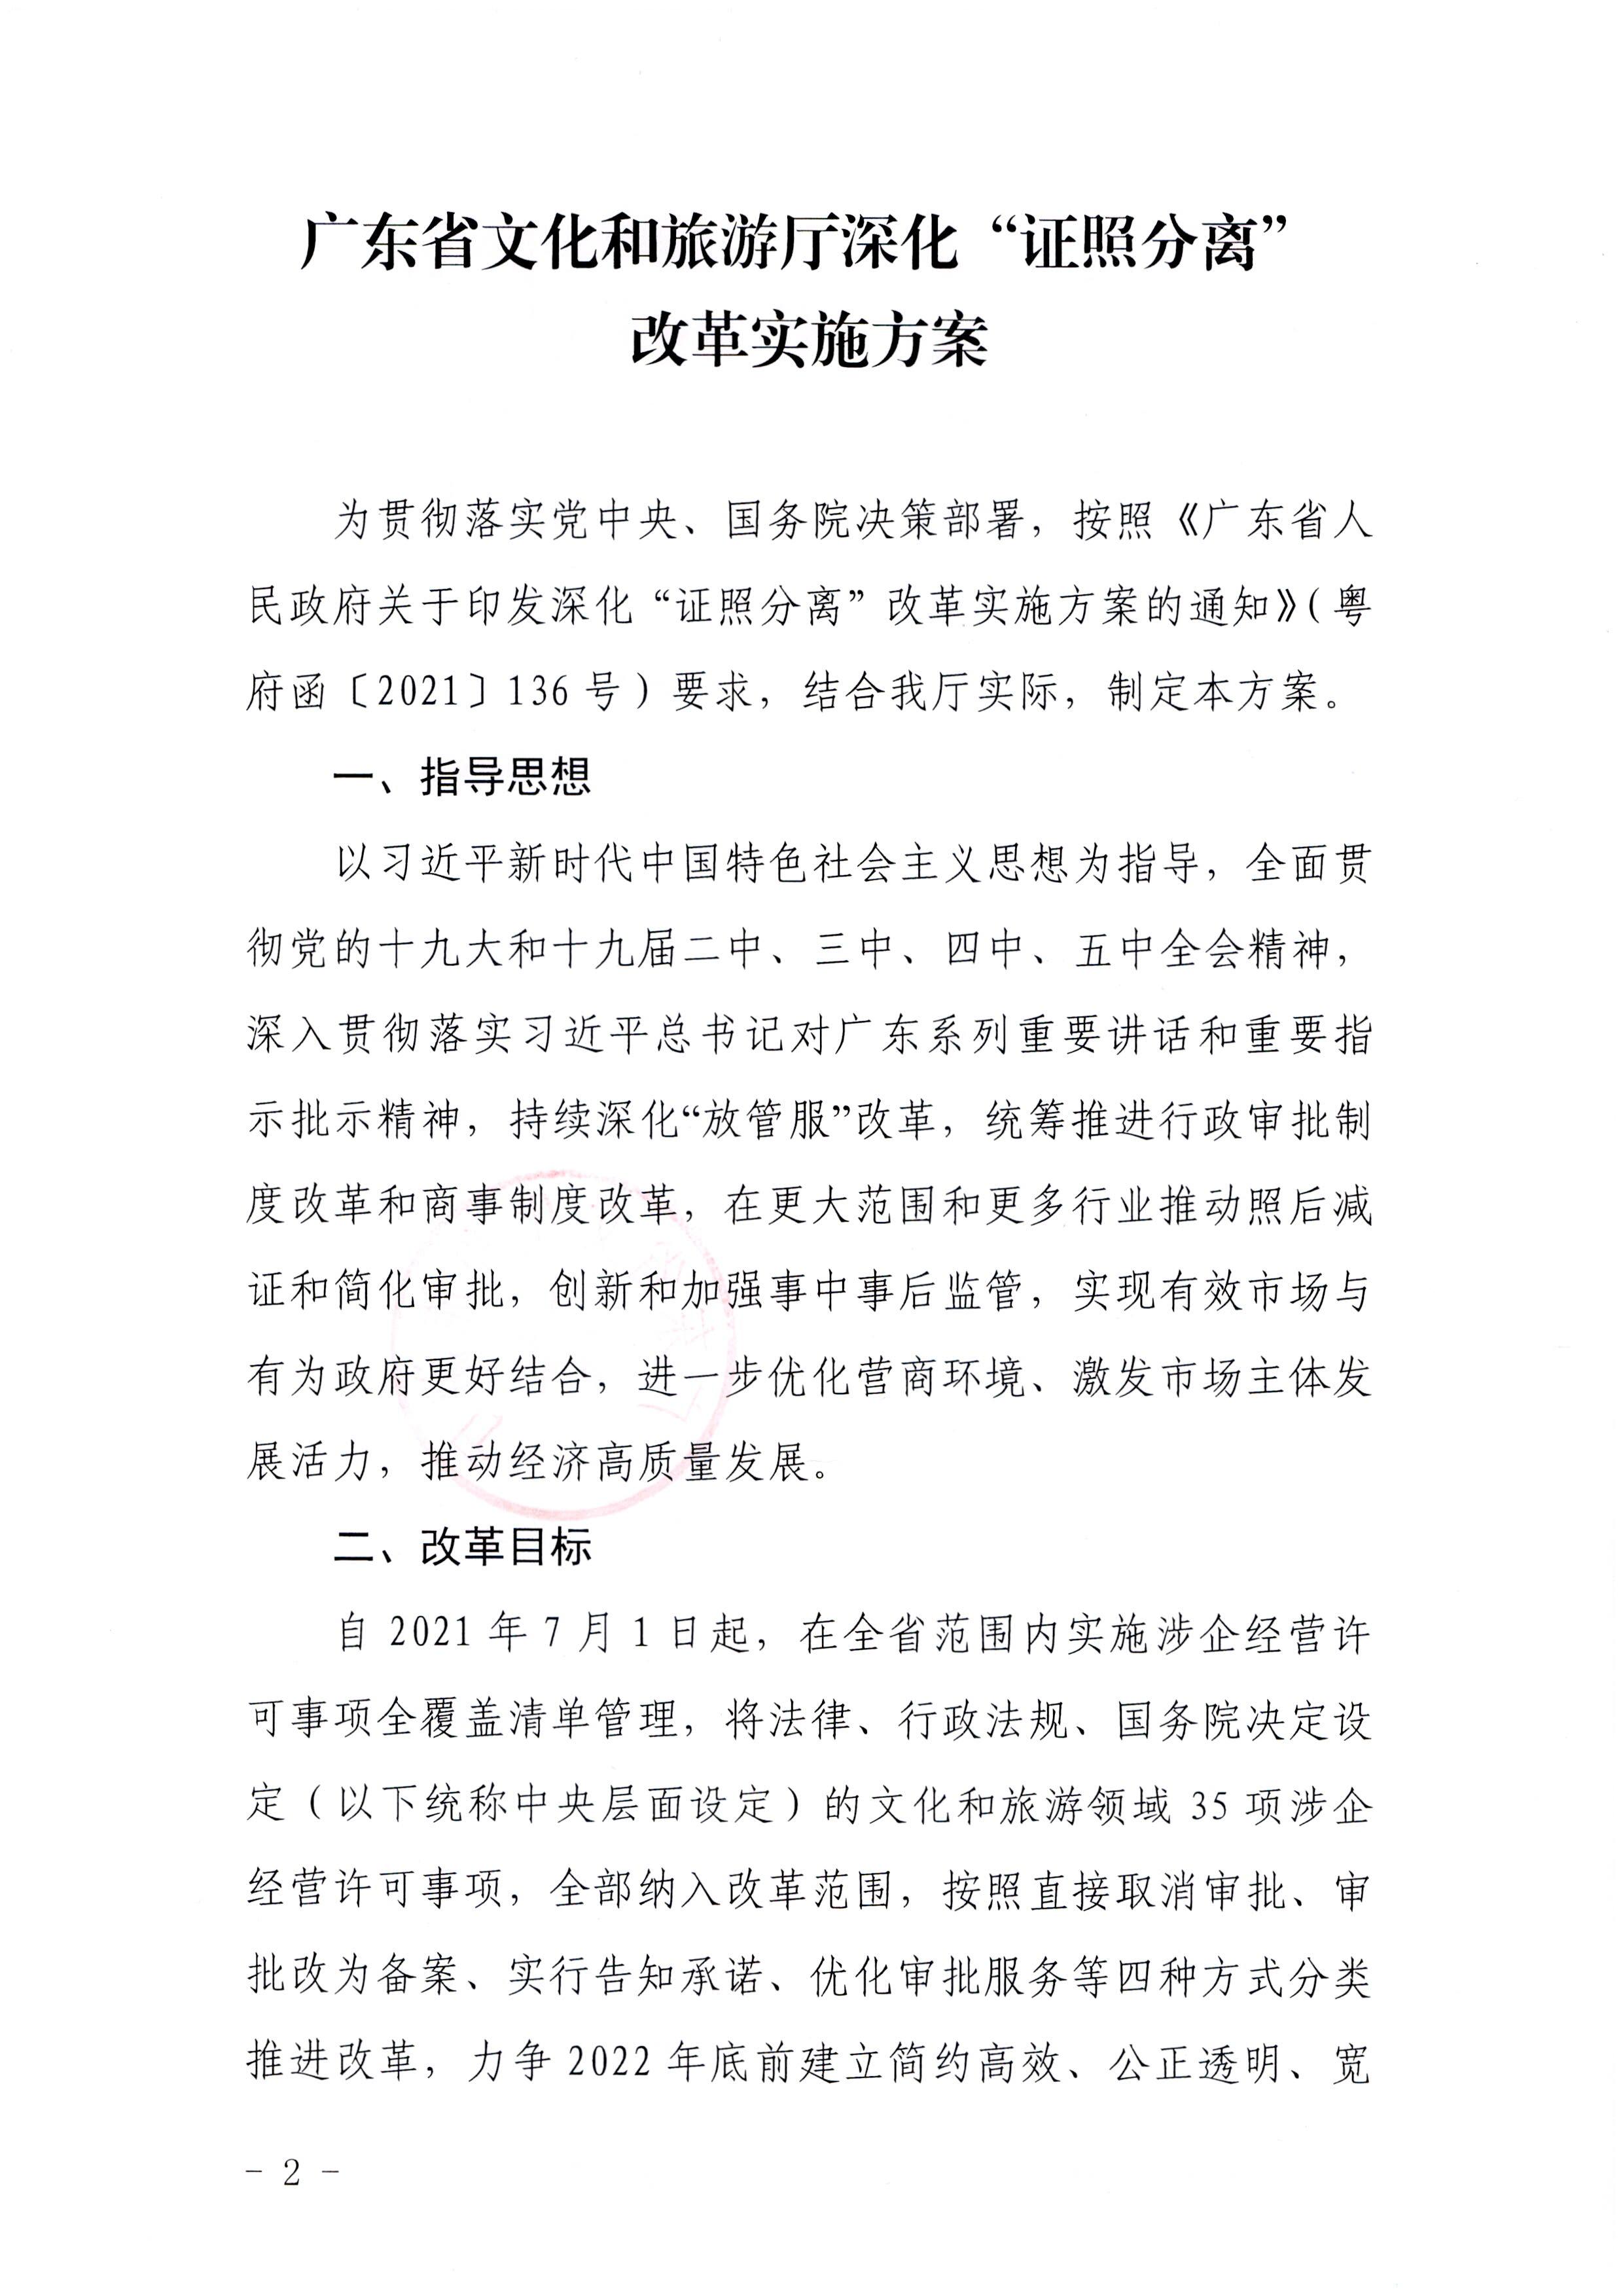 广东省文化和旅游厅印发证照分离改革实施方案的通知_页面_02.jpg